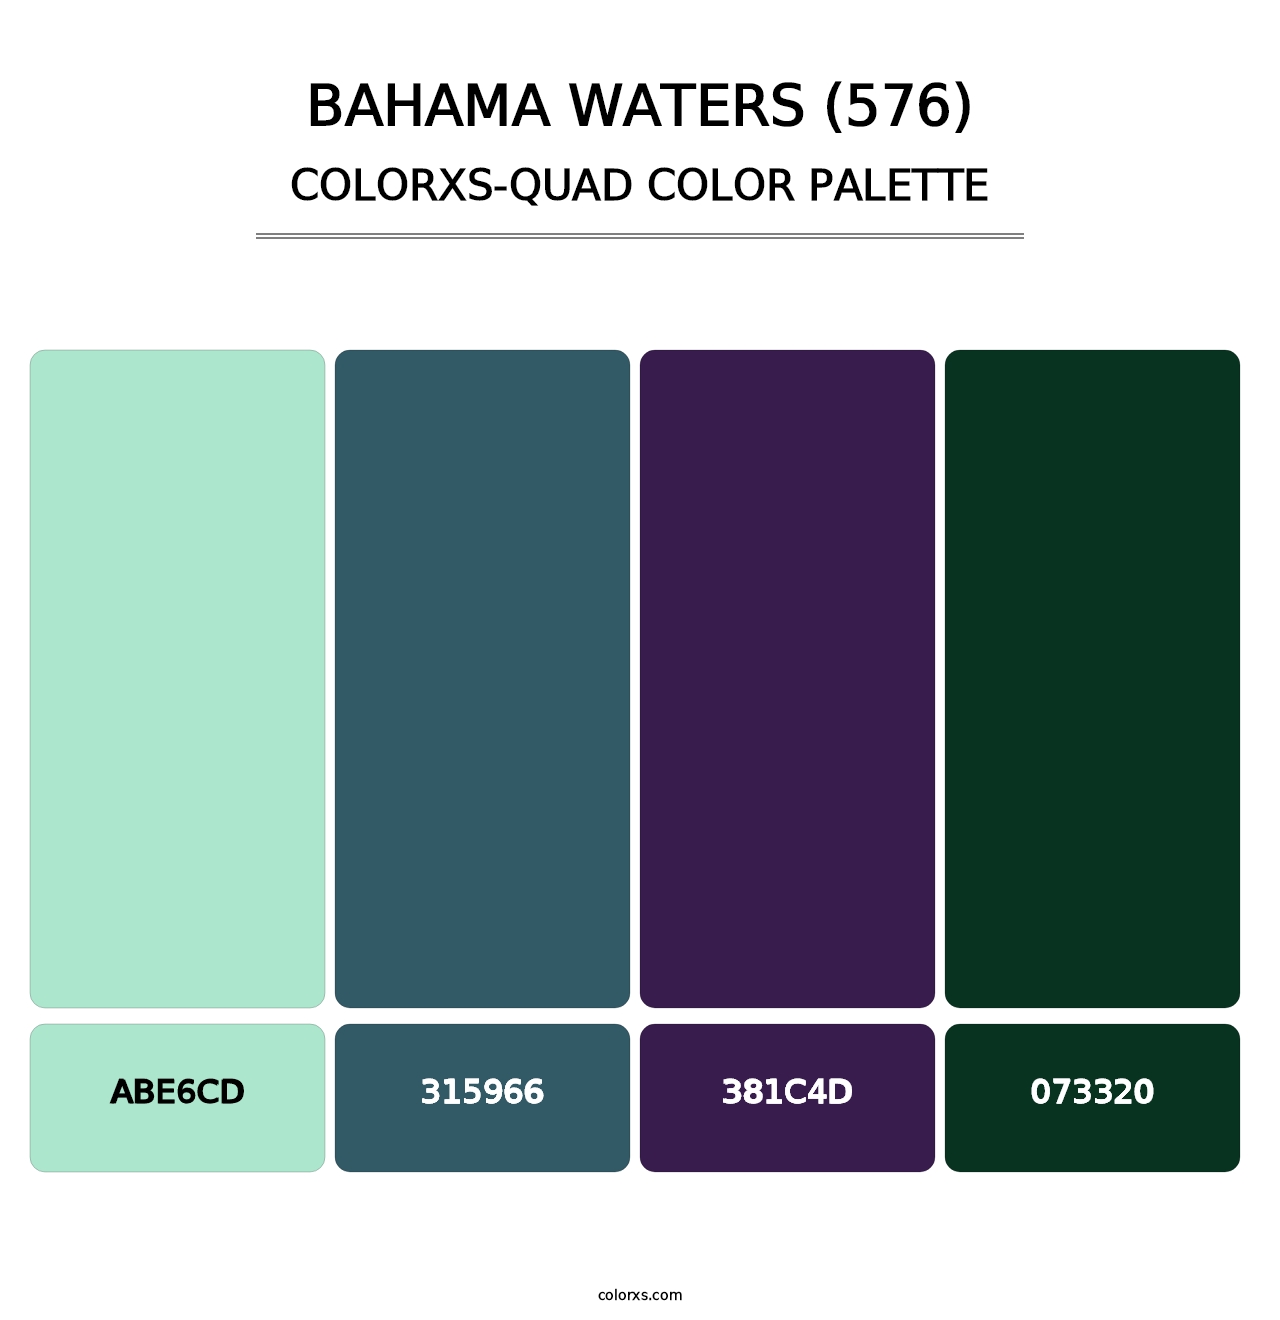 Bahama Waters (576) - Colorxs Quad Palette